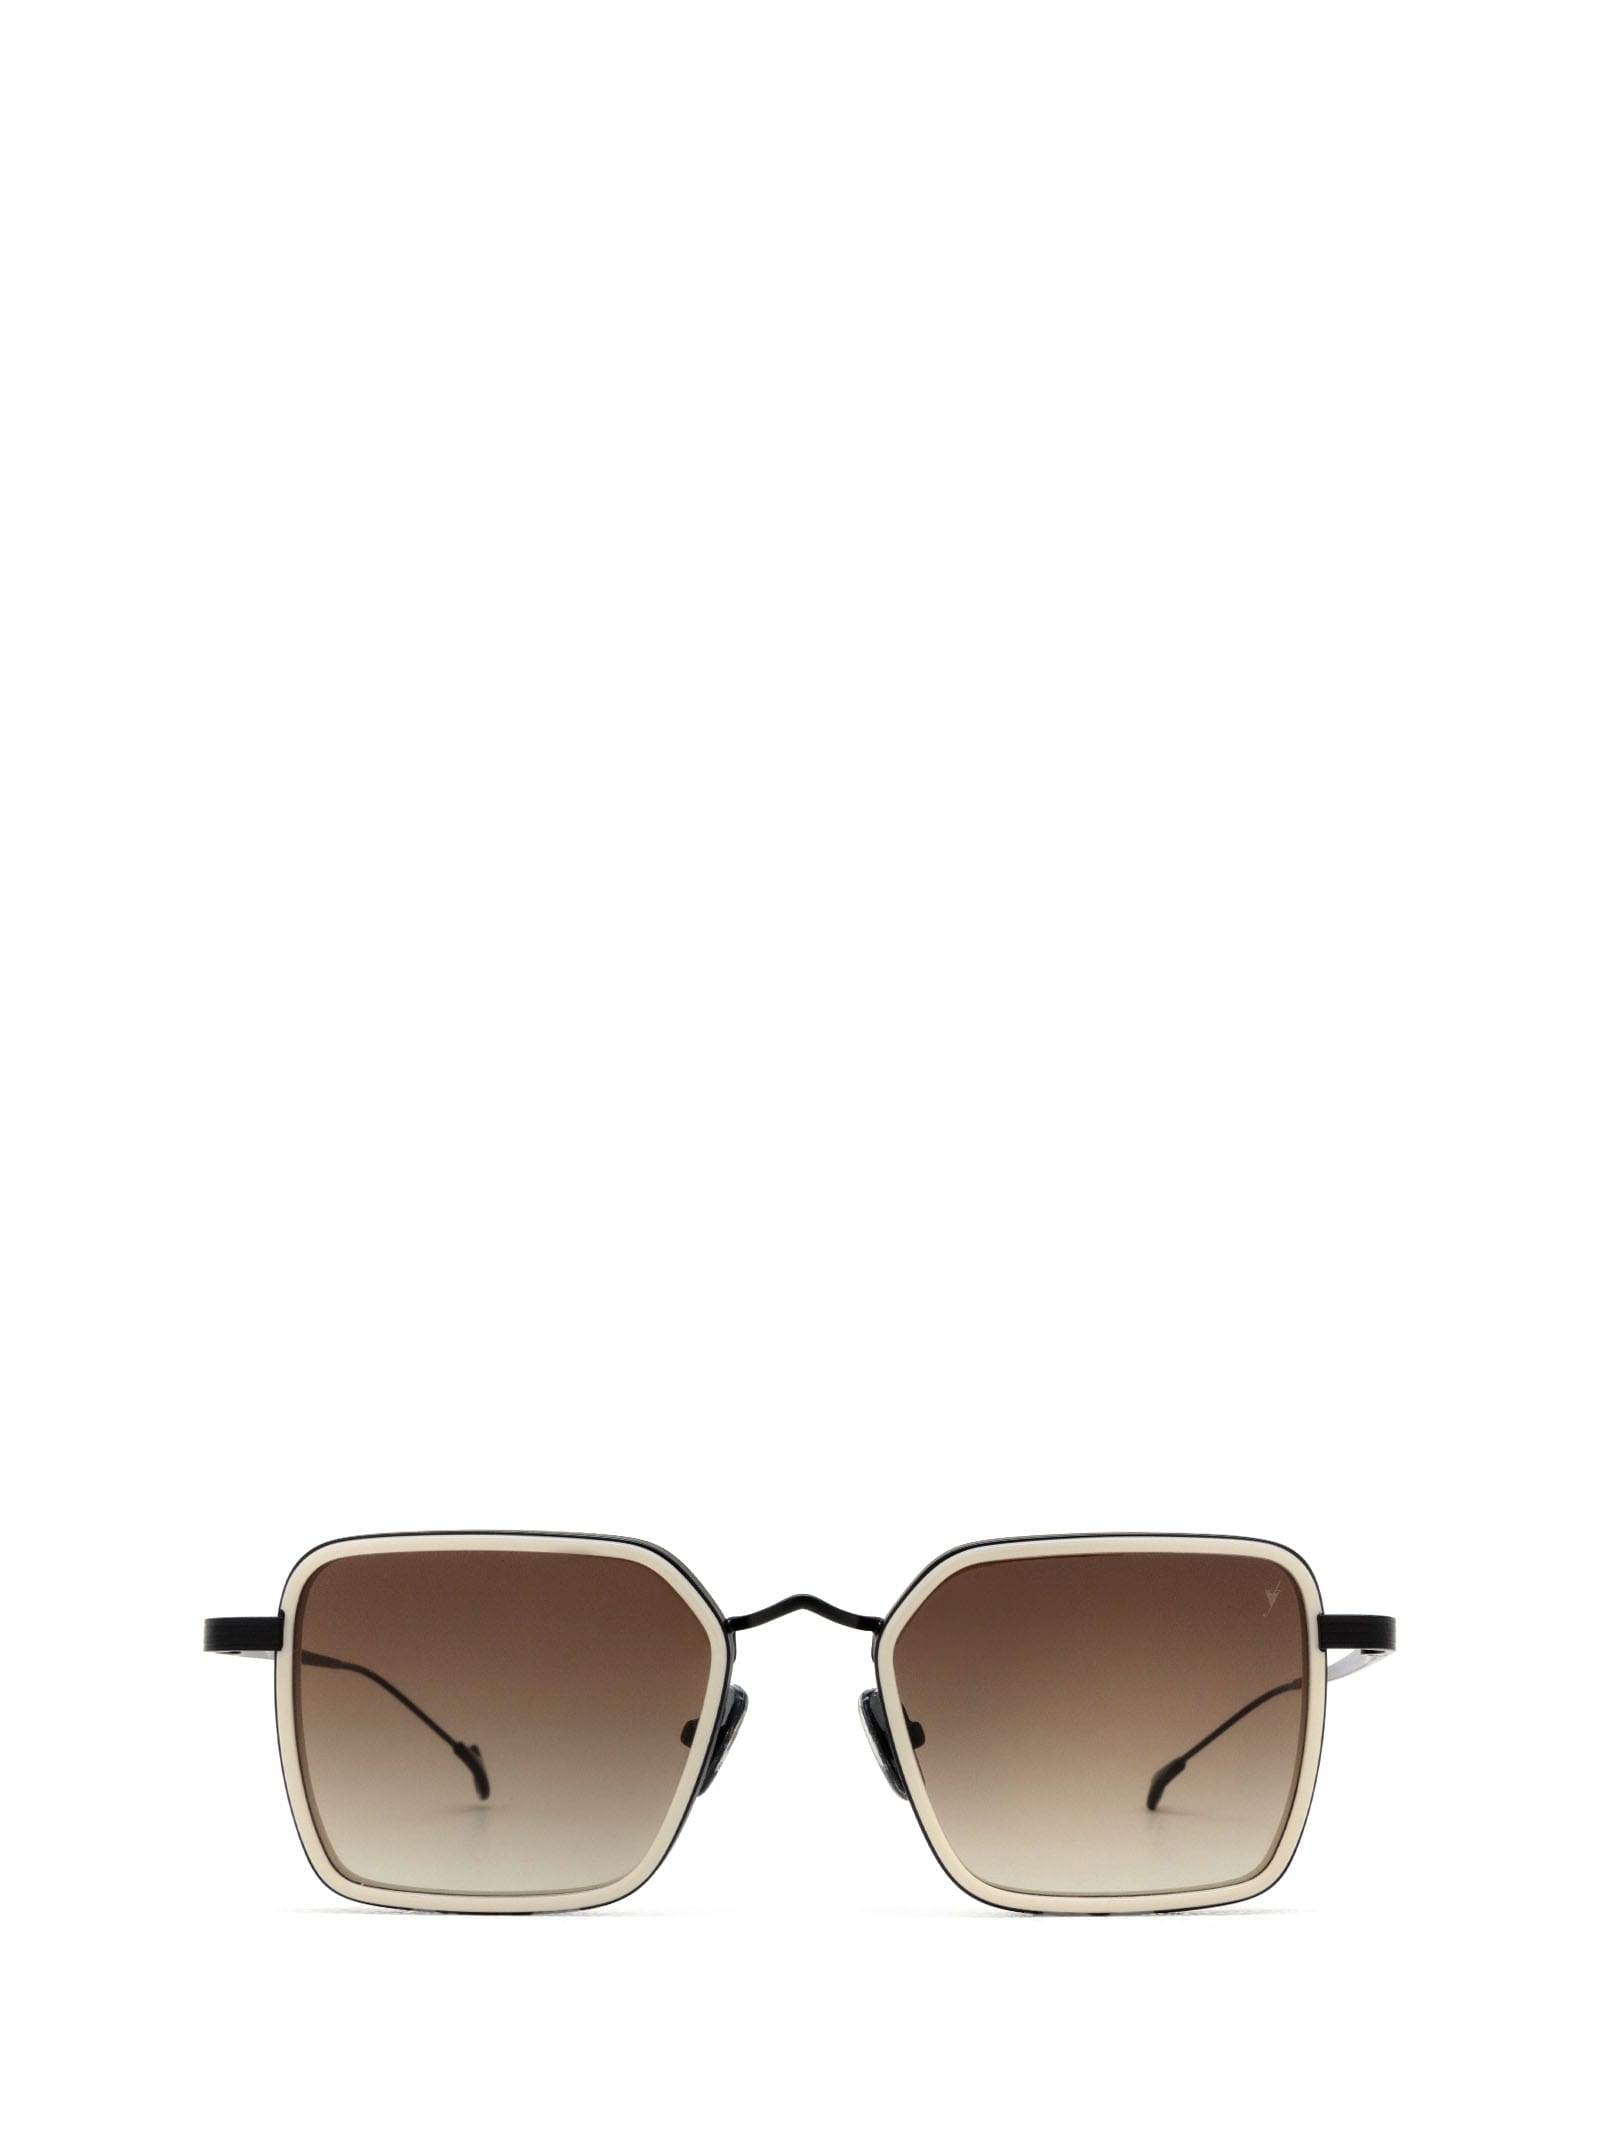 Nomad Cream Sunglasses